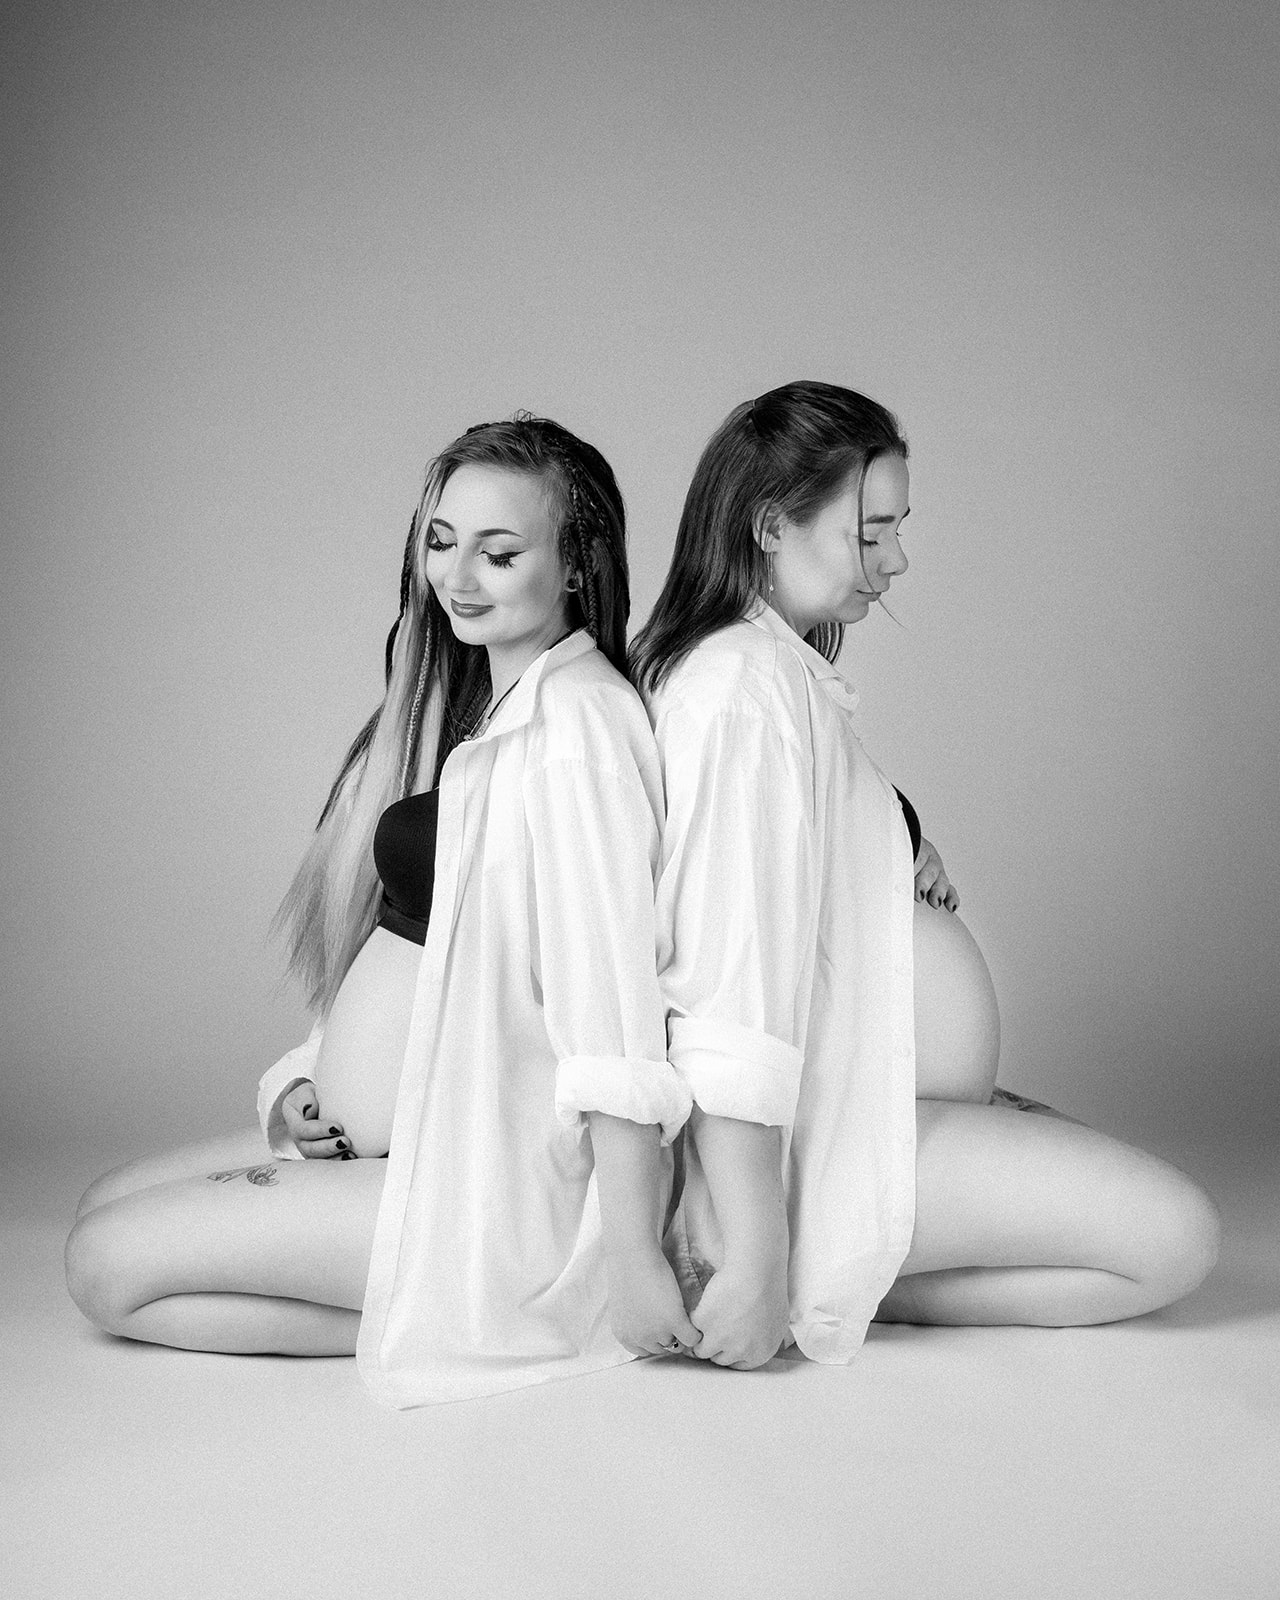 søstre der sidder på gulv gravide på samme tid i sort/hvid